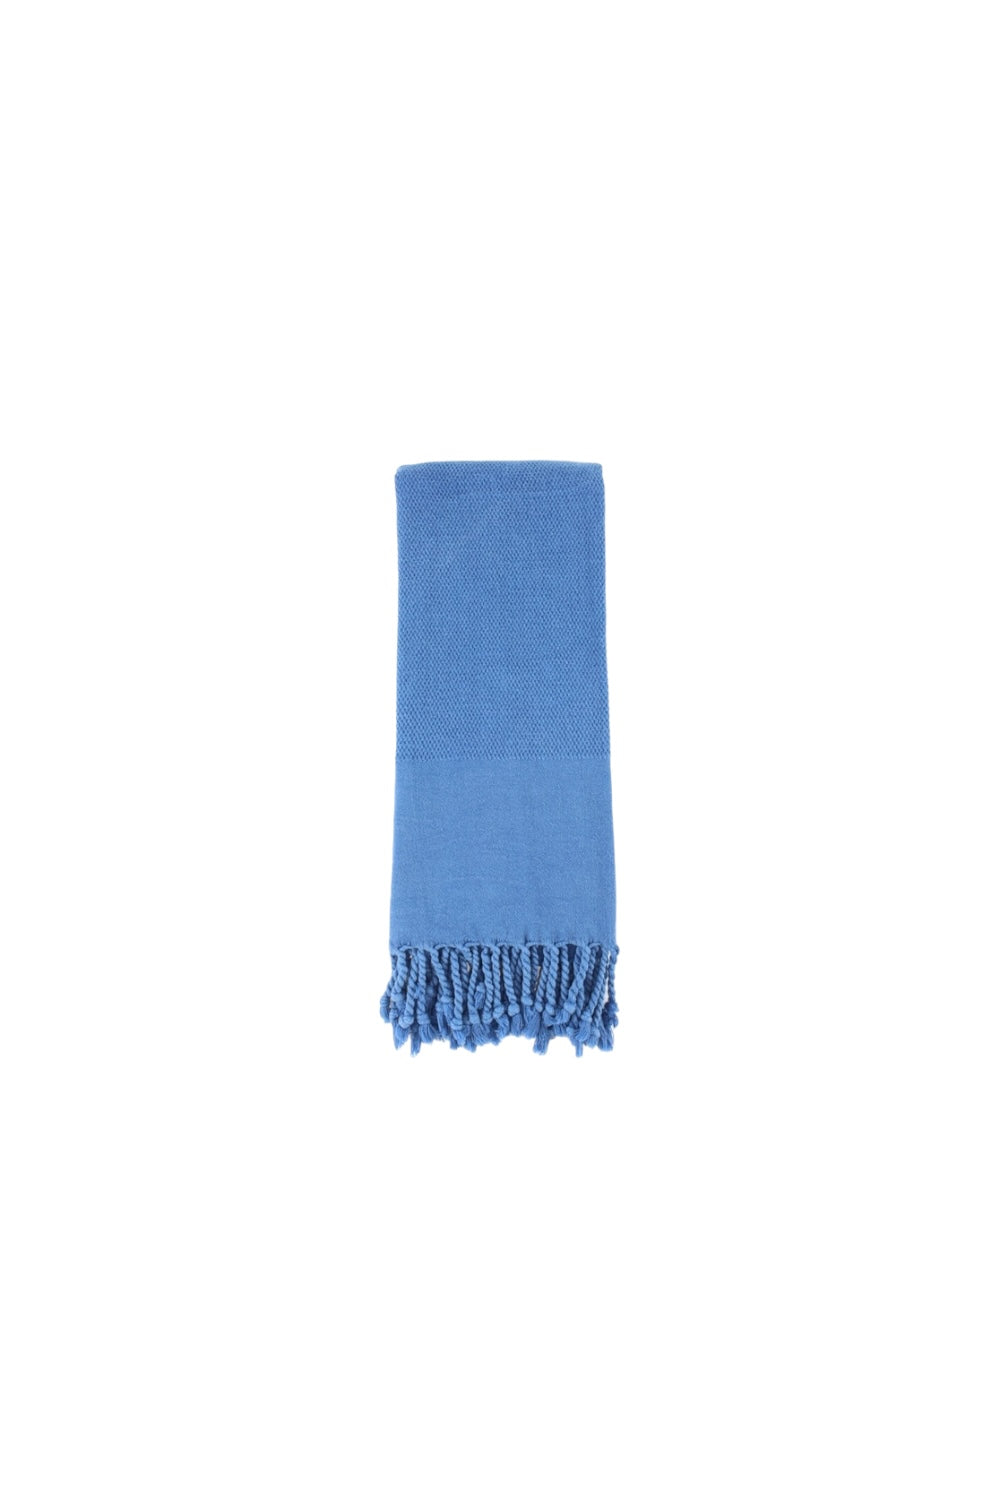 Premium Stone Washed Turkish Towel in Denim Blue